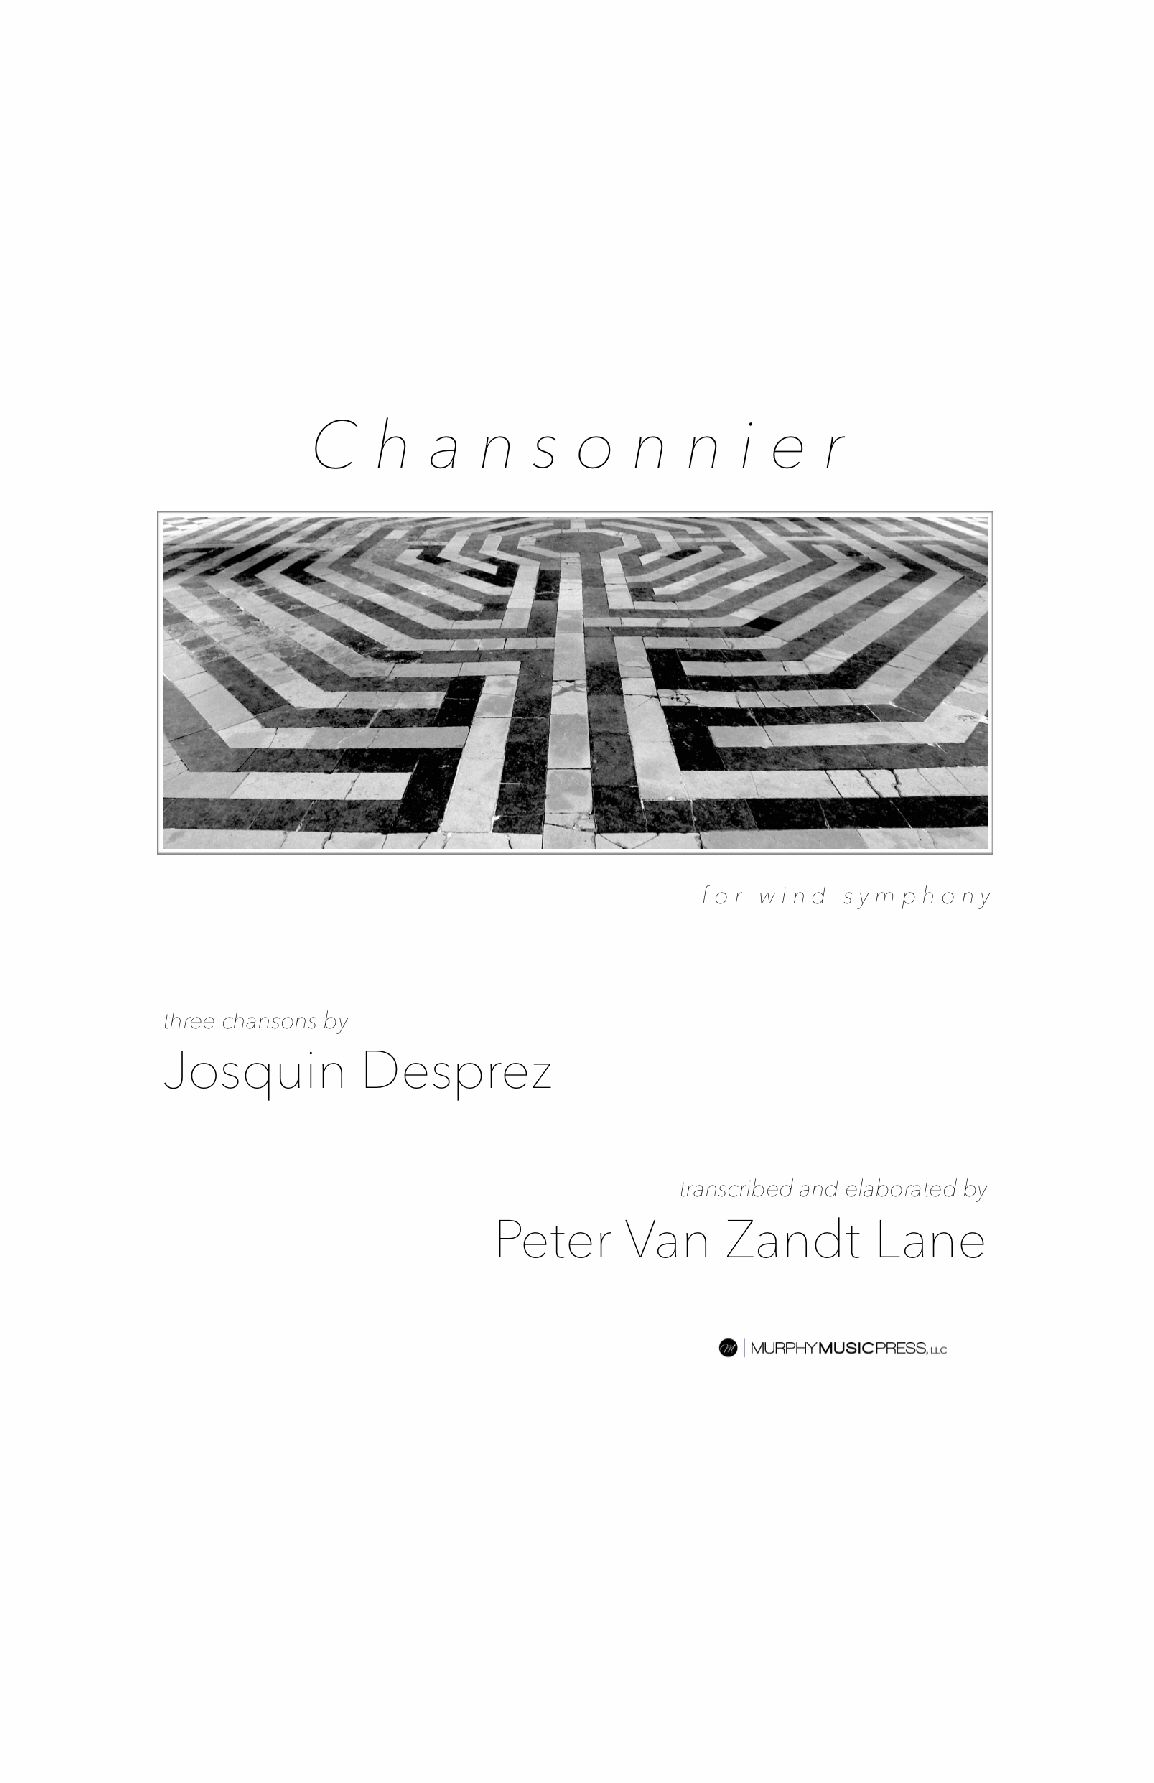 Chansonnier by Peter Van Zandt Lane